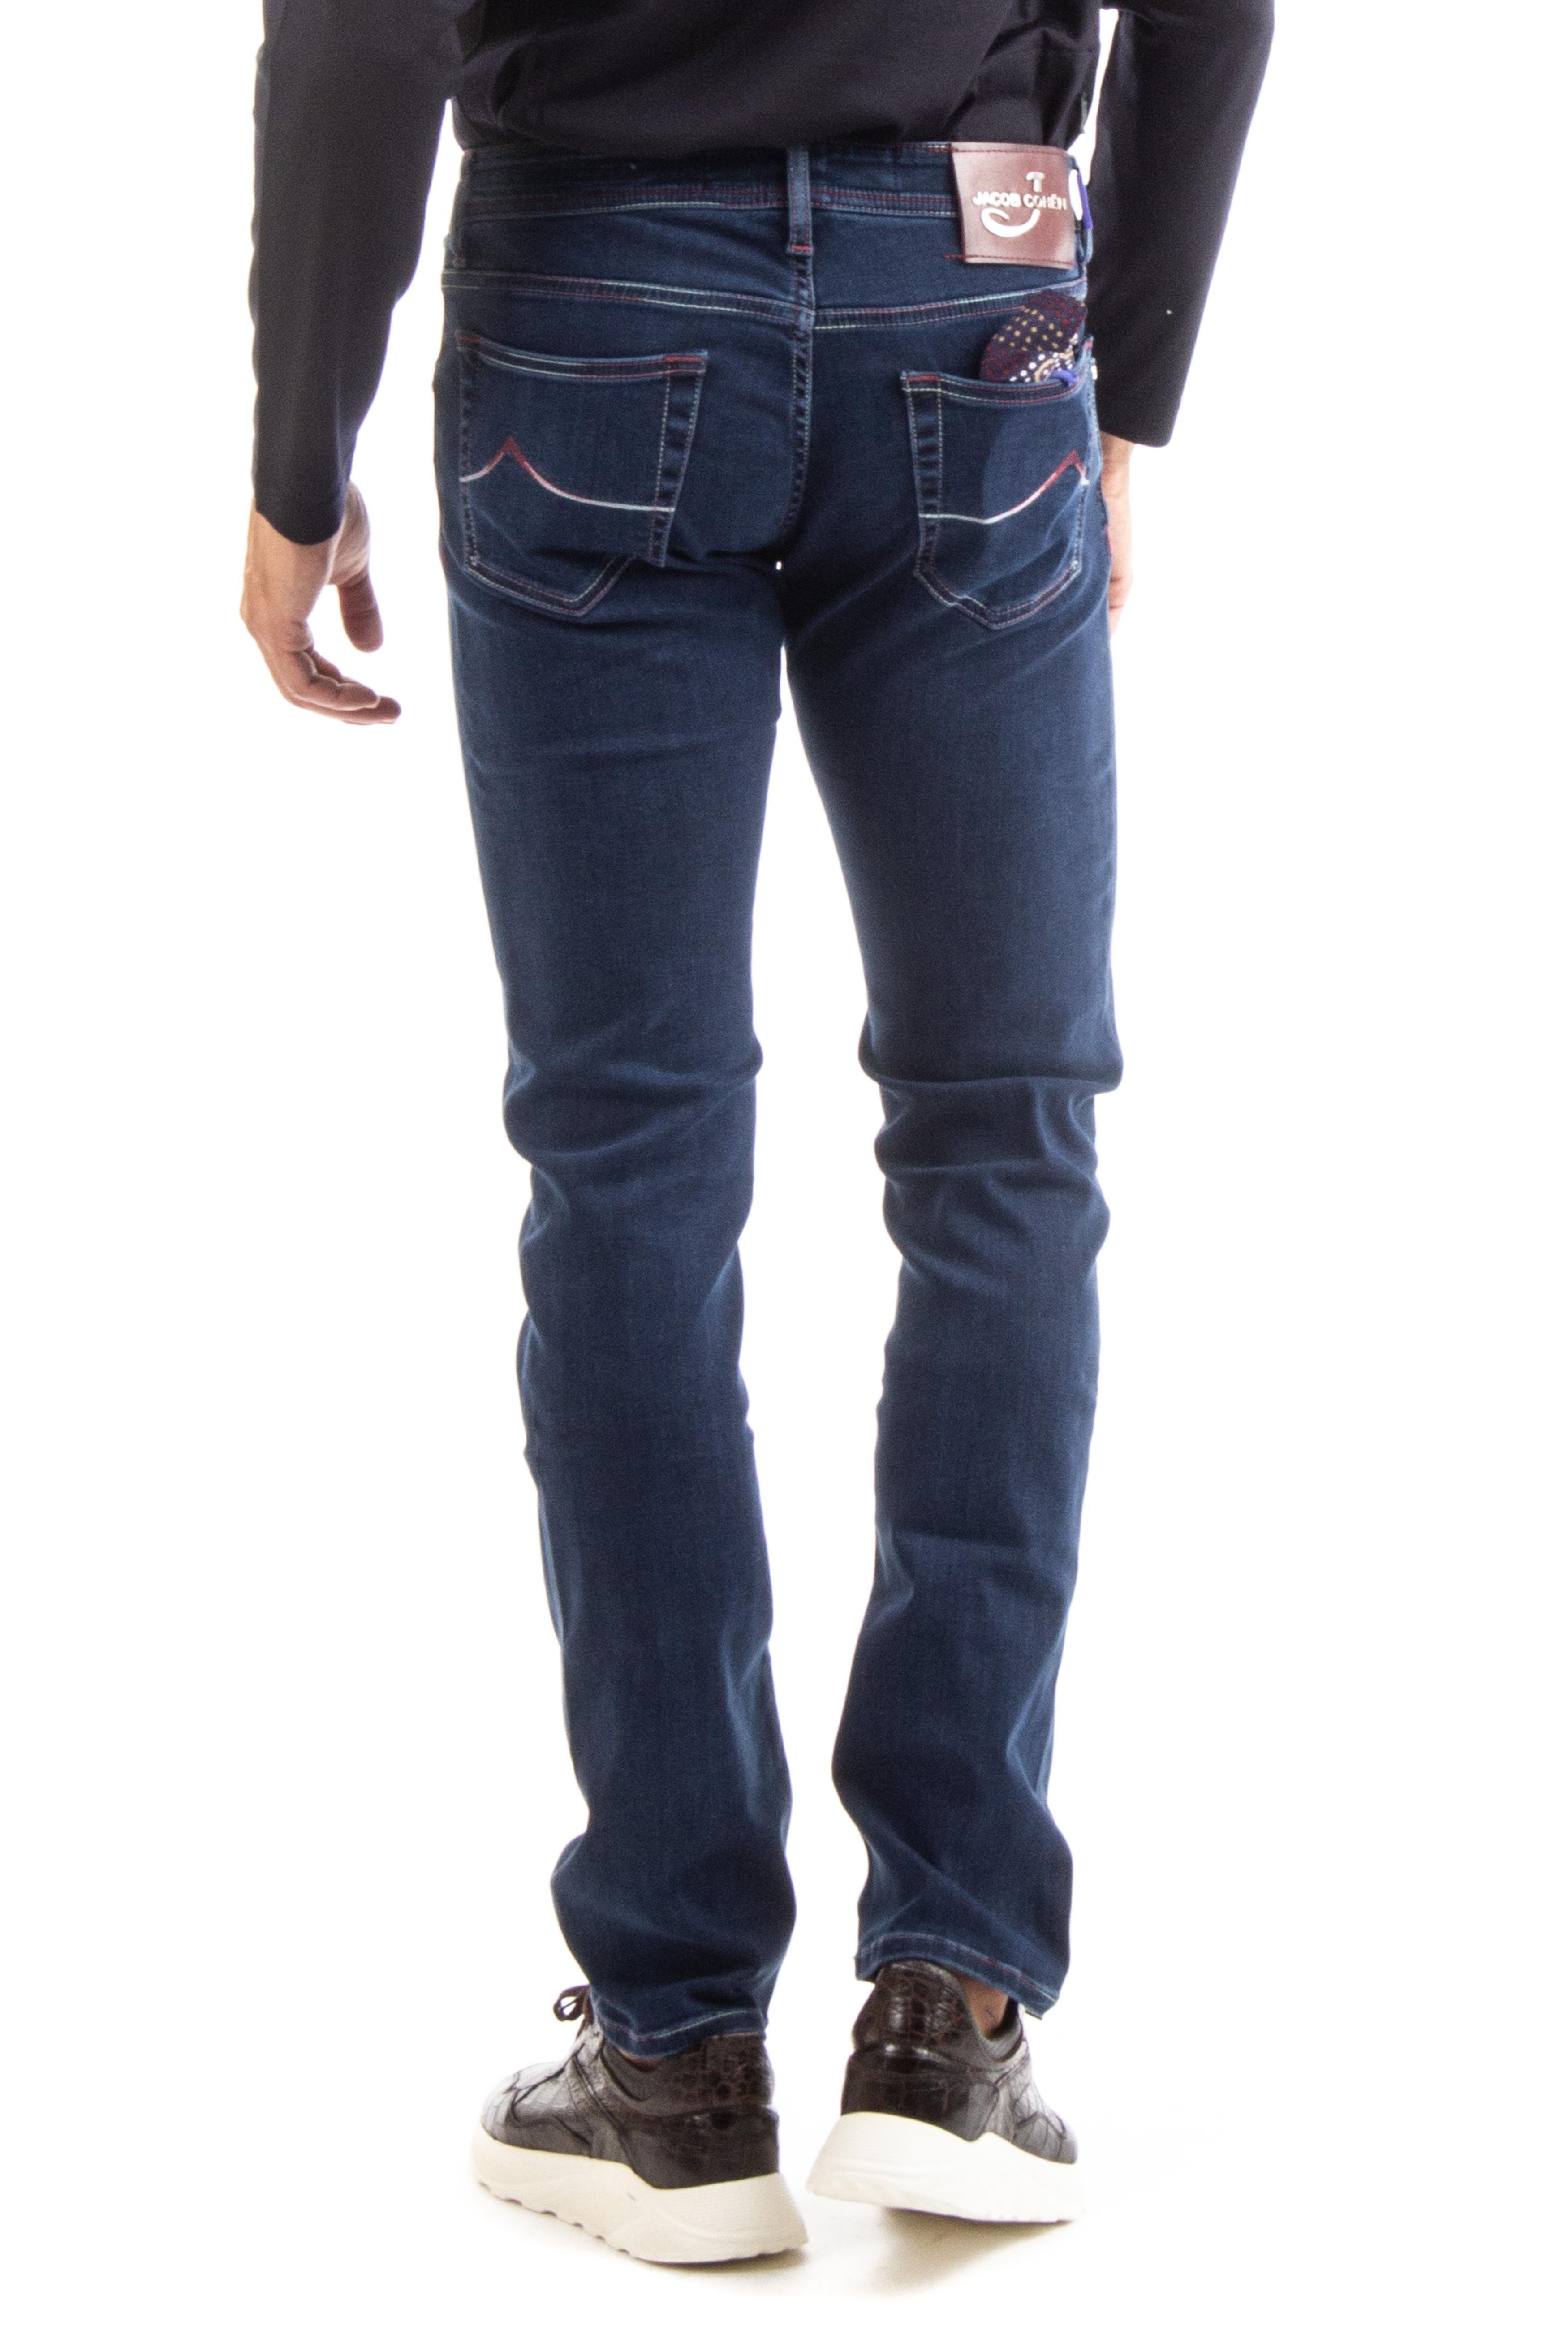 jacob cohen jeans j622 comfort